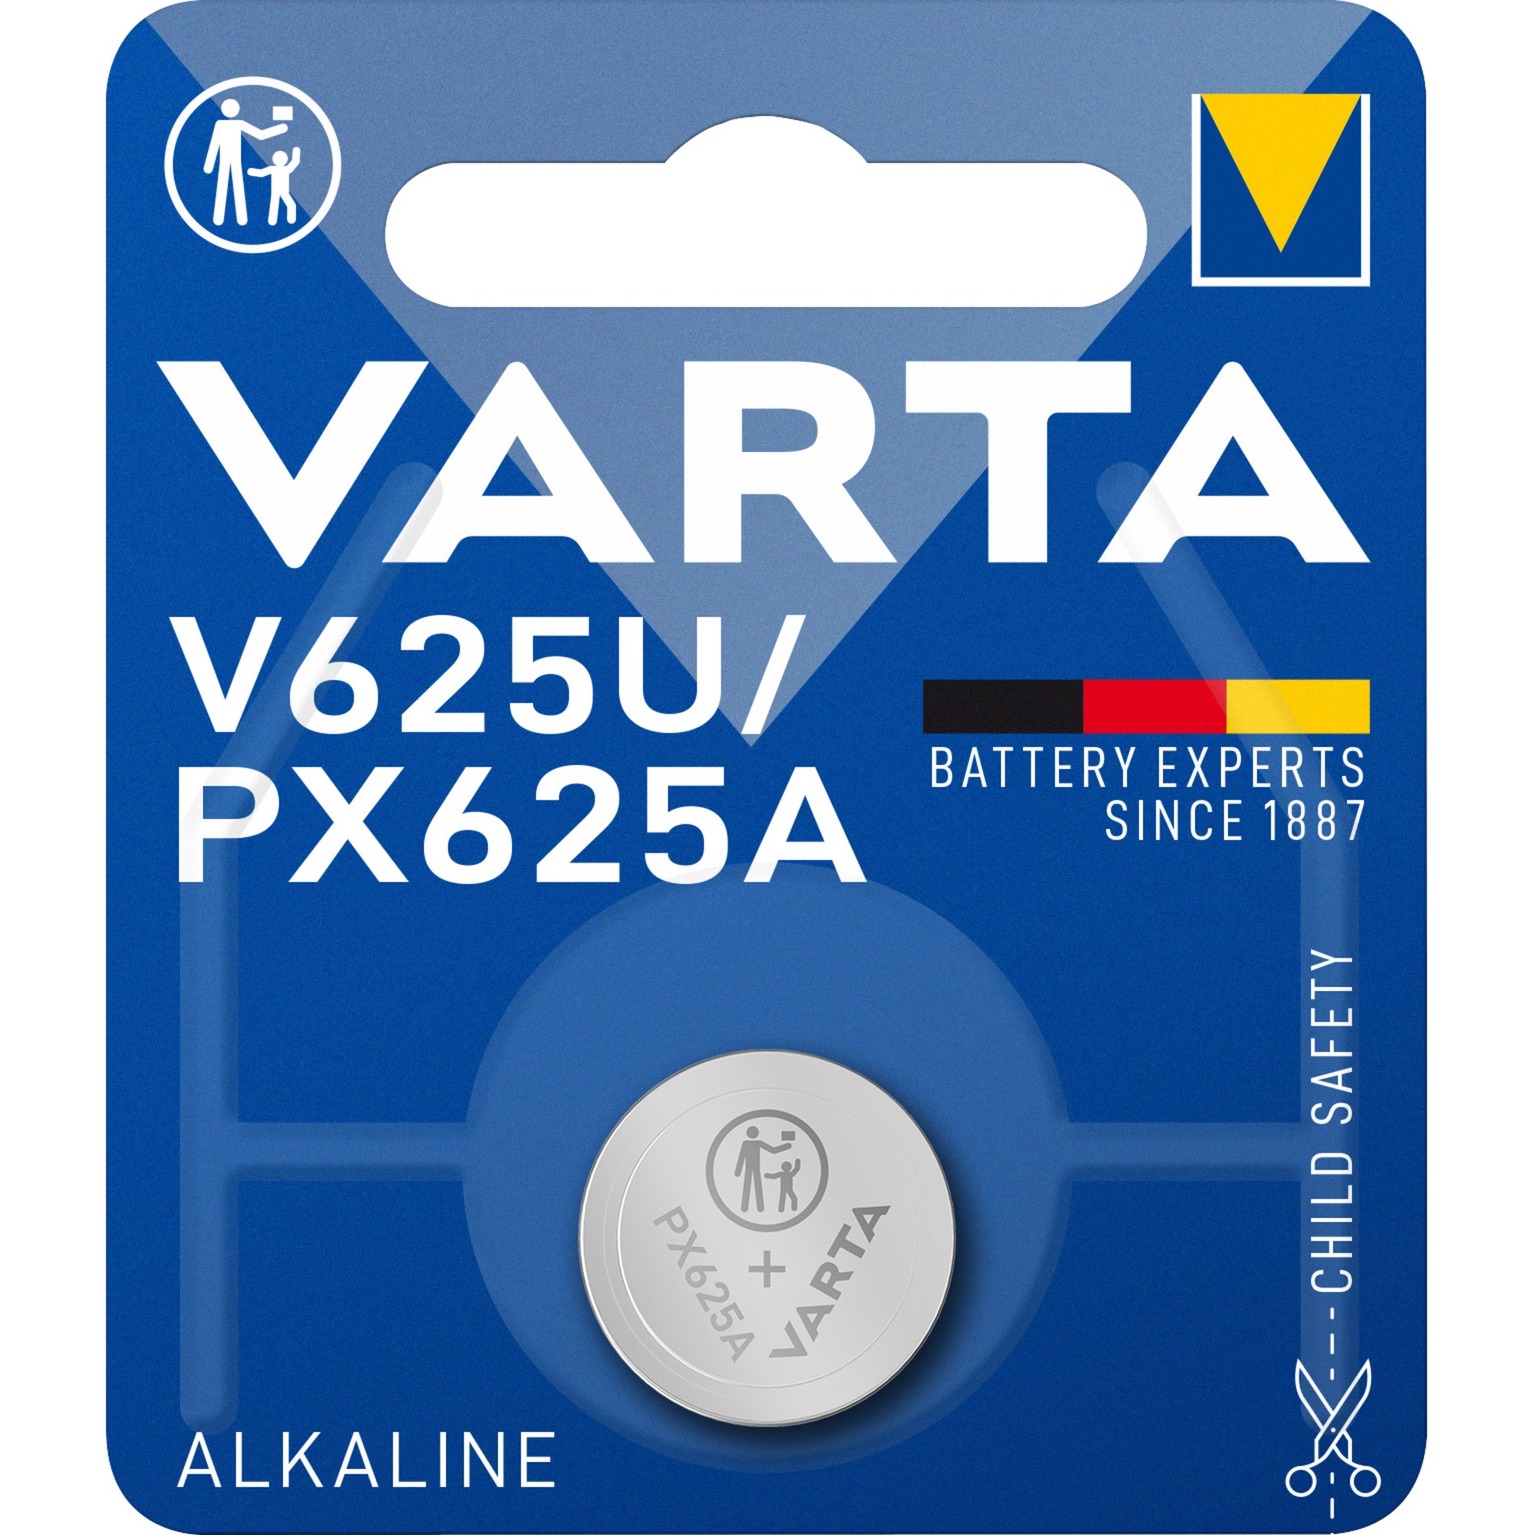 Image of Alternate - Professional V625U, Batterie online einkaufen bei Alternate